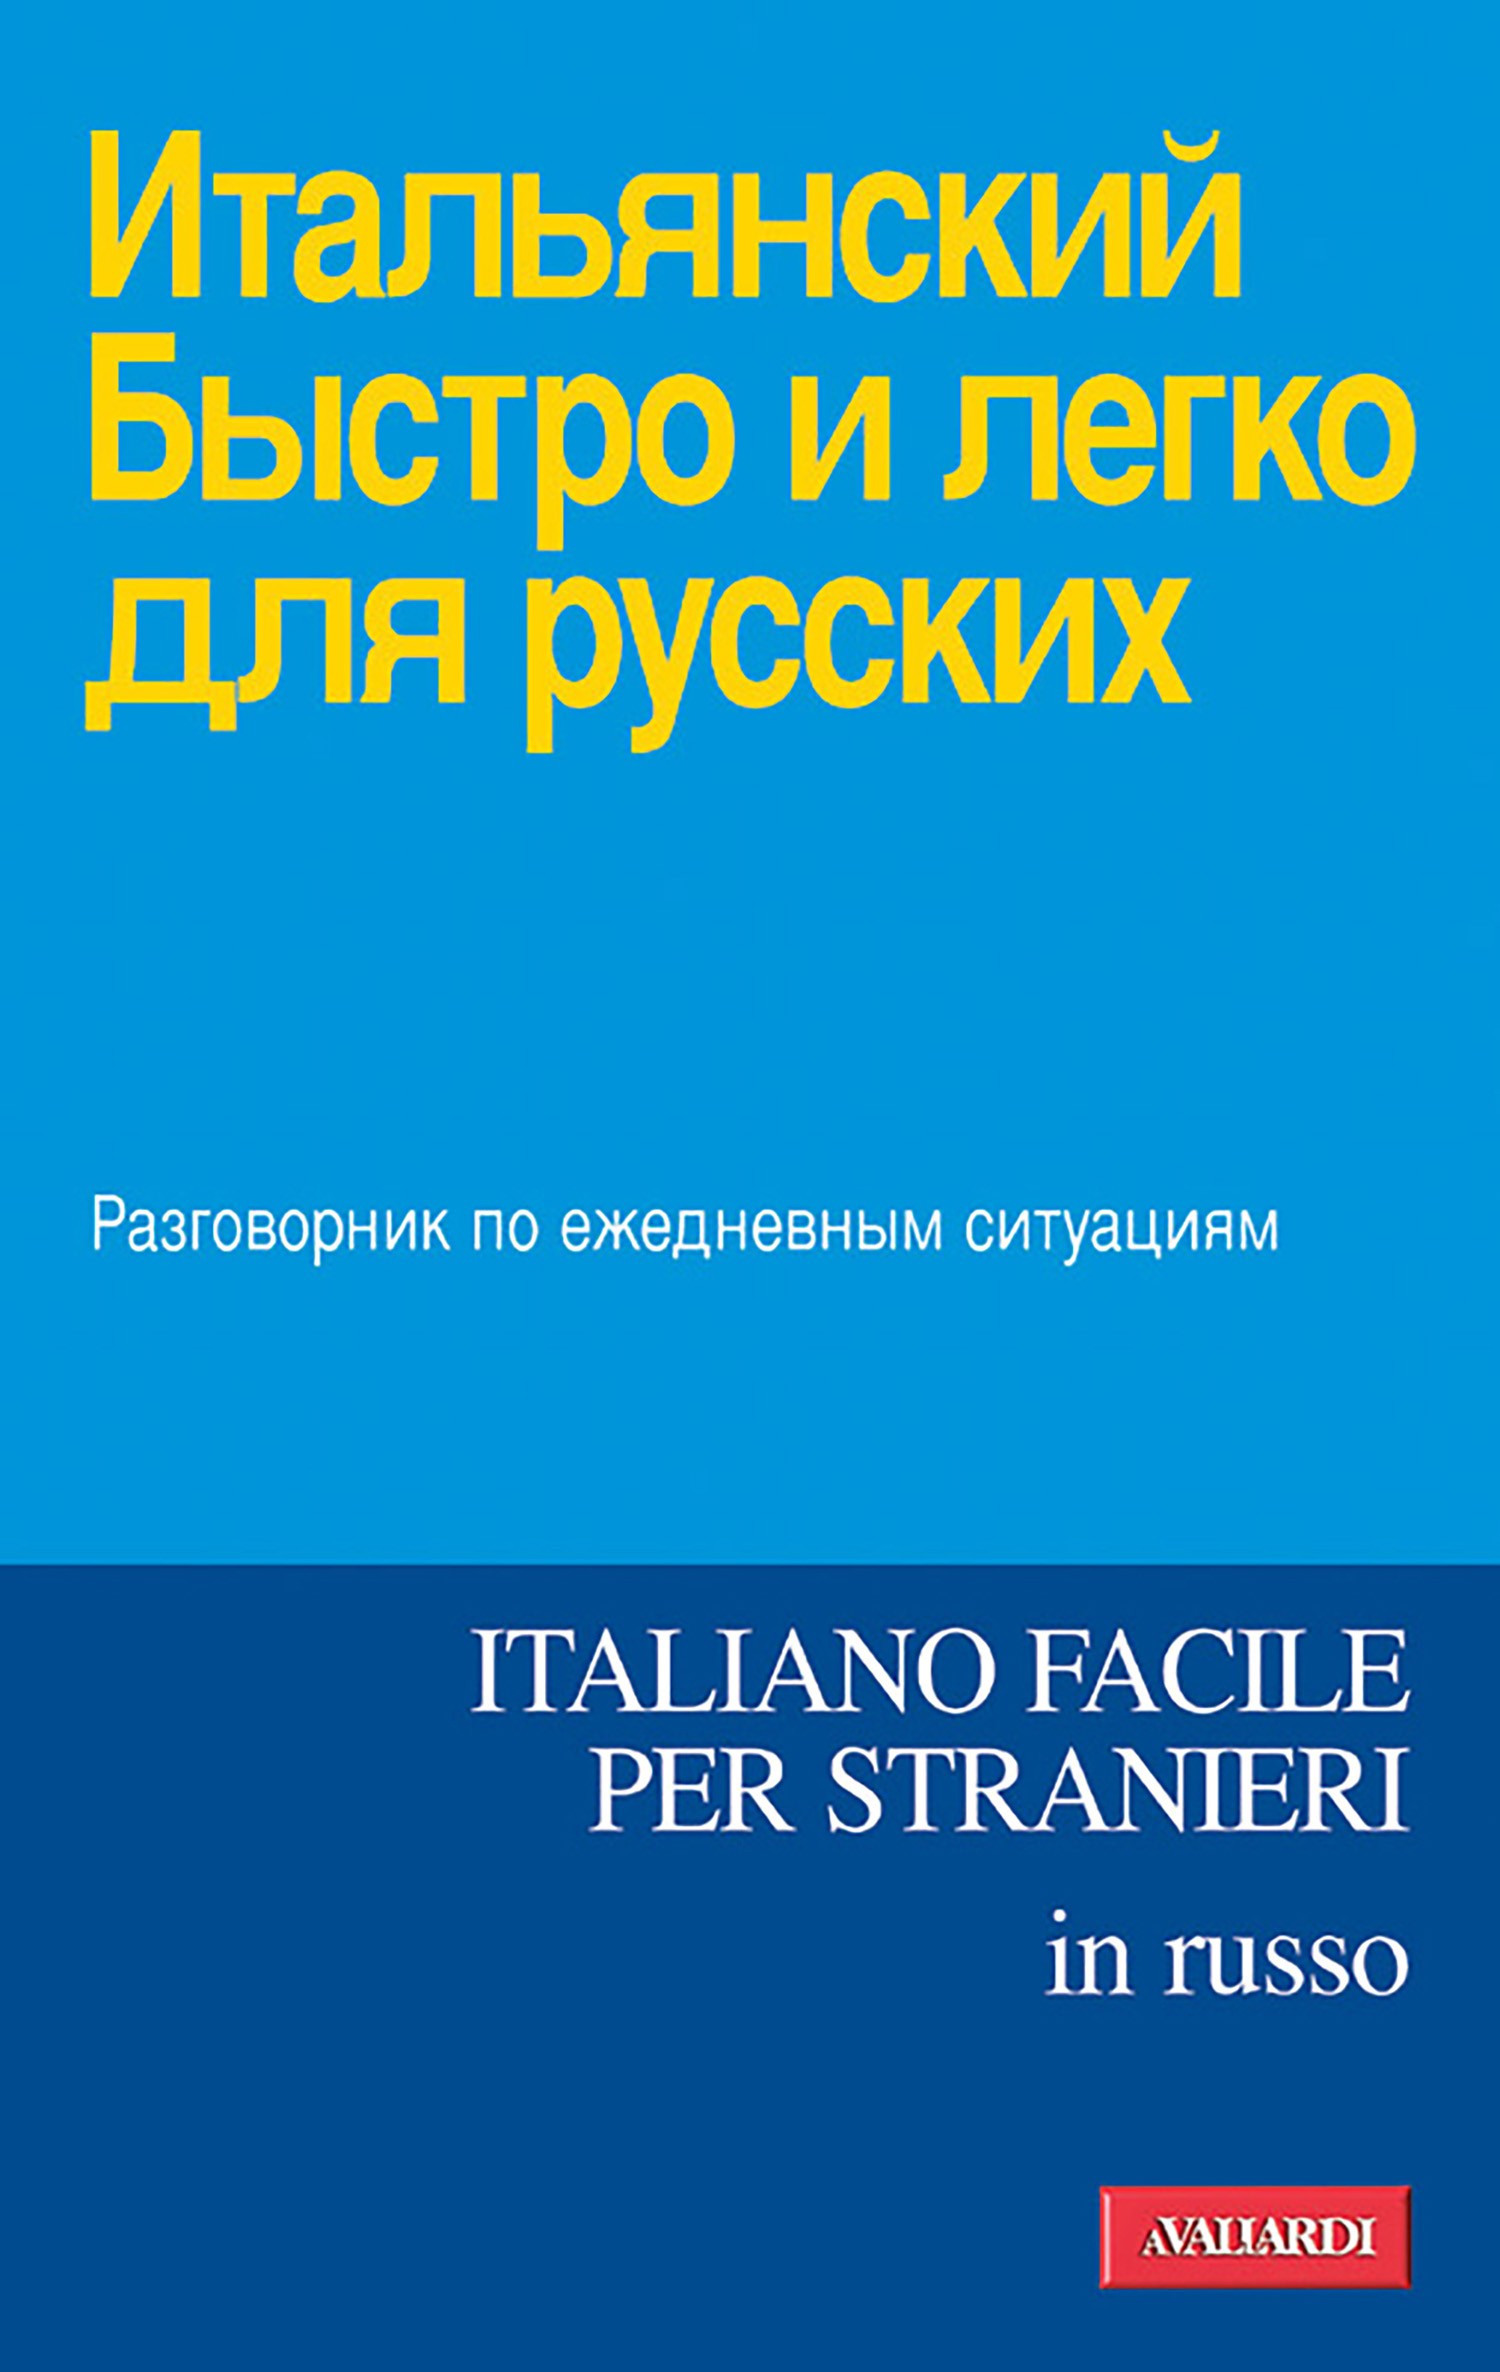 Italiano facile in russo - Librerie.coop